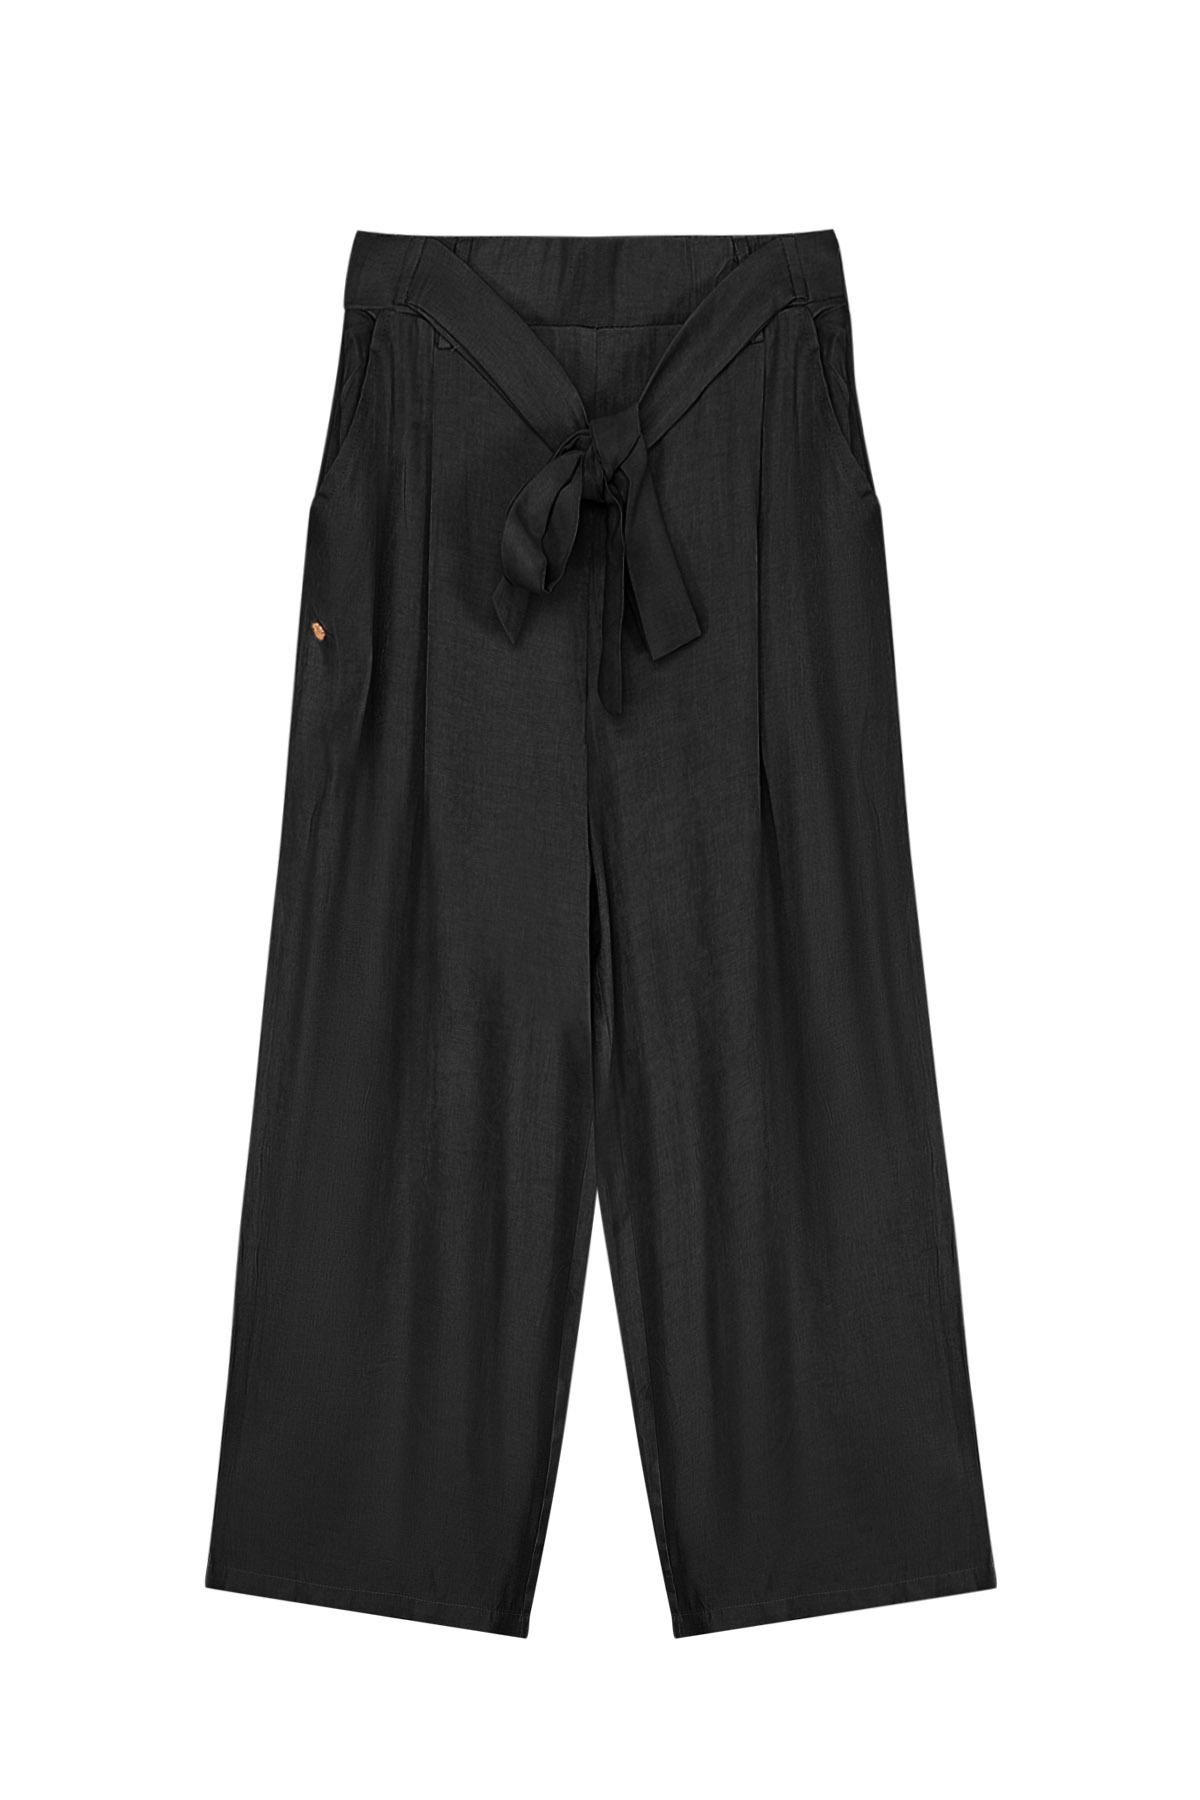 Pantalon long nœud détail noir h5 